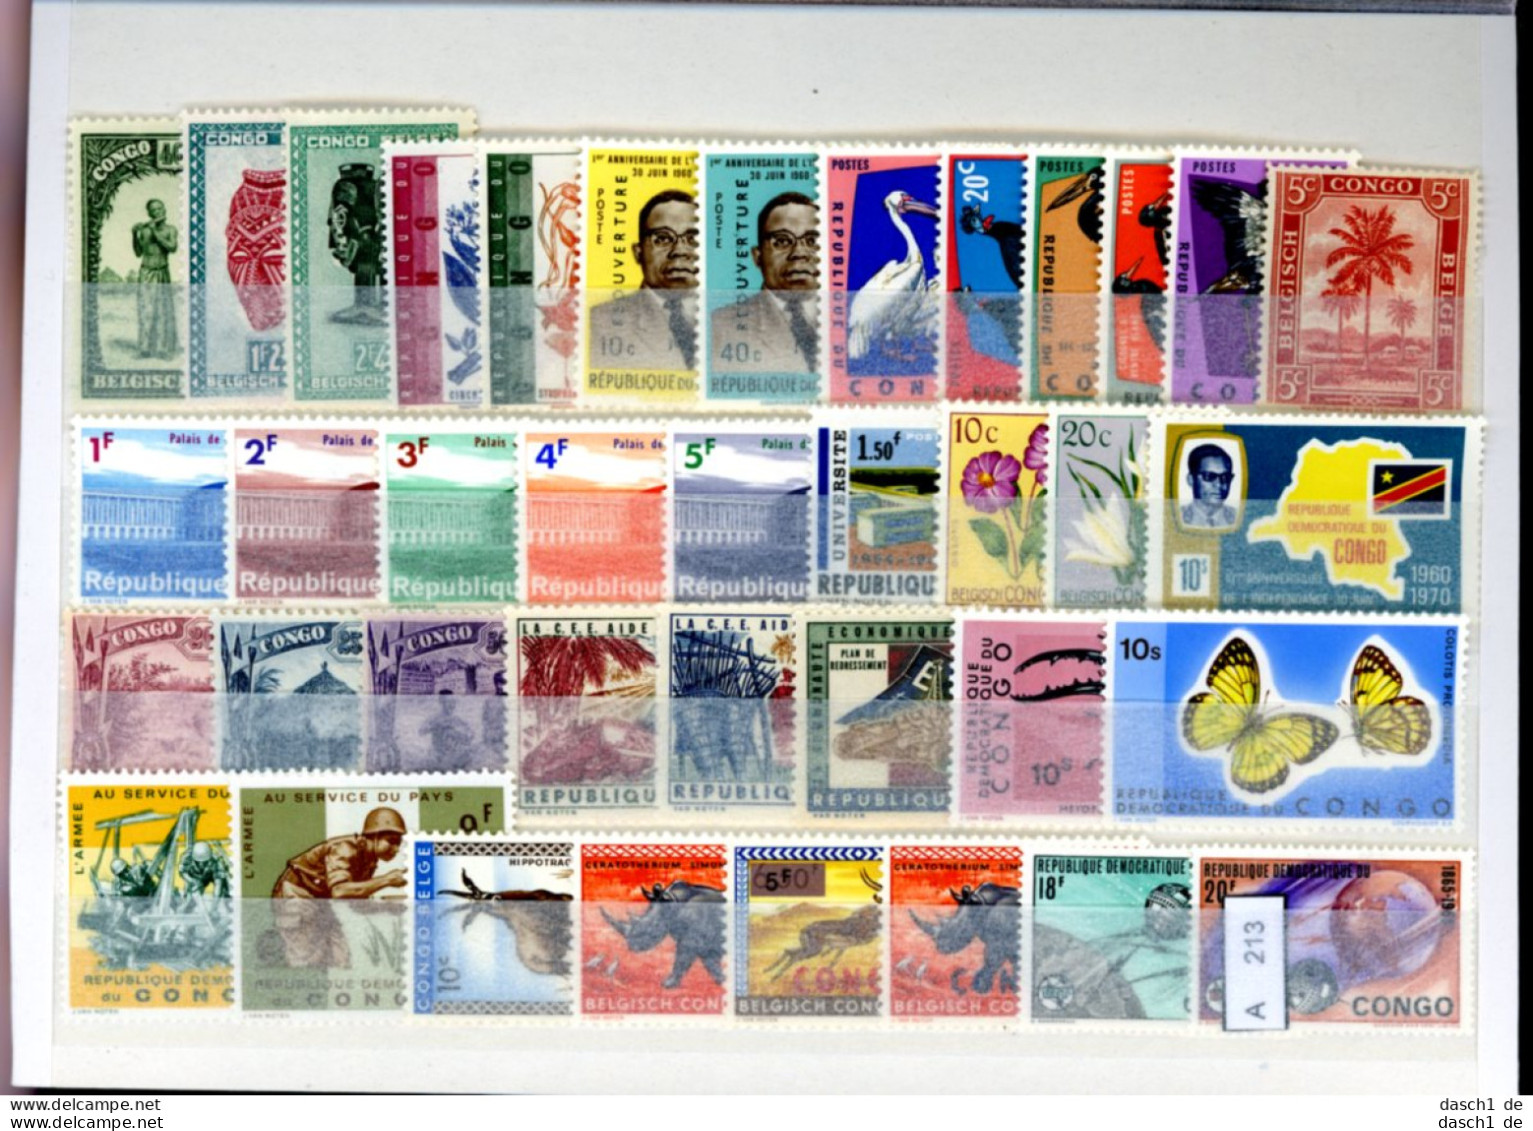 Slg. Postfrische Marken, Xx, 3 Lose Auf A5-Karte Dichtgesteckt, Schwerpunkt Motivmarken, Afrika - Colecciones